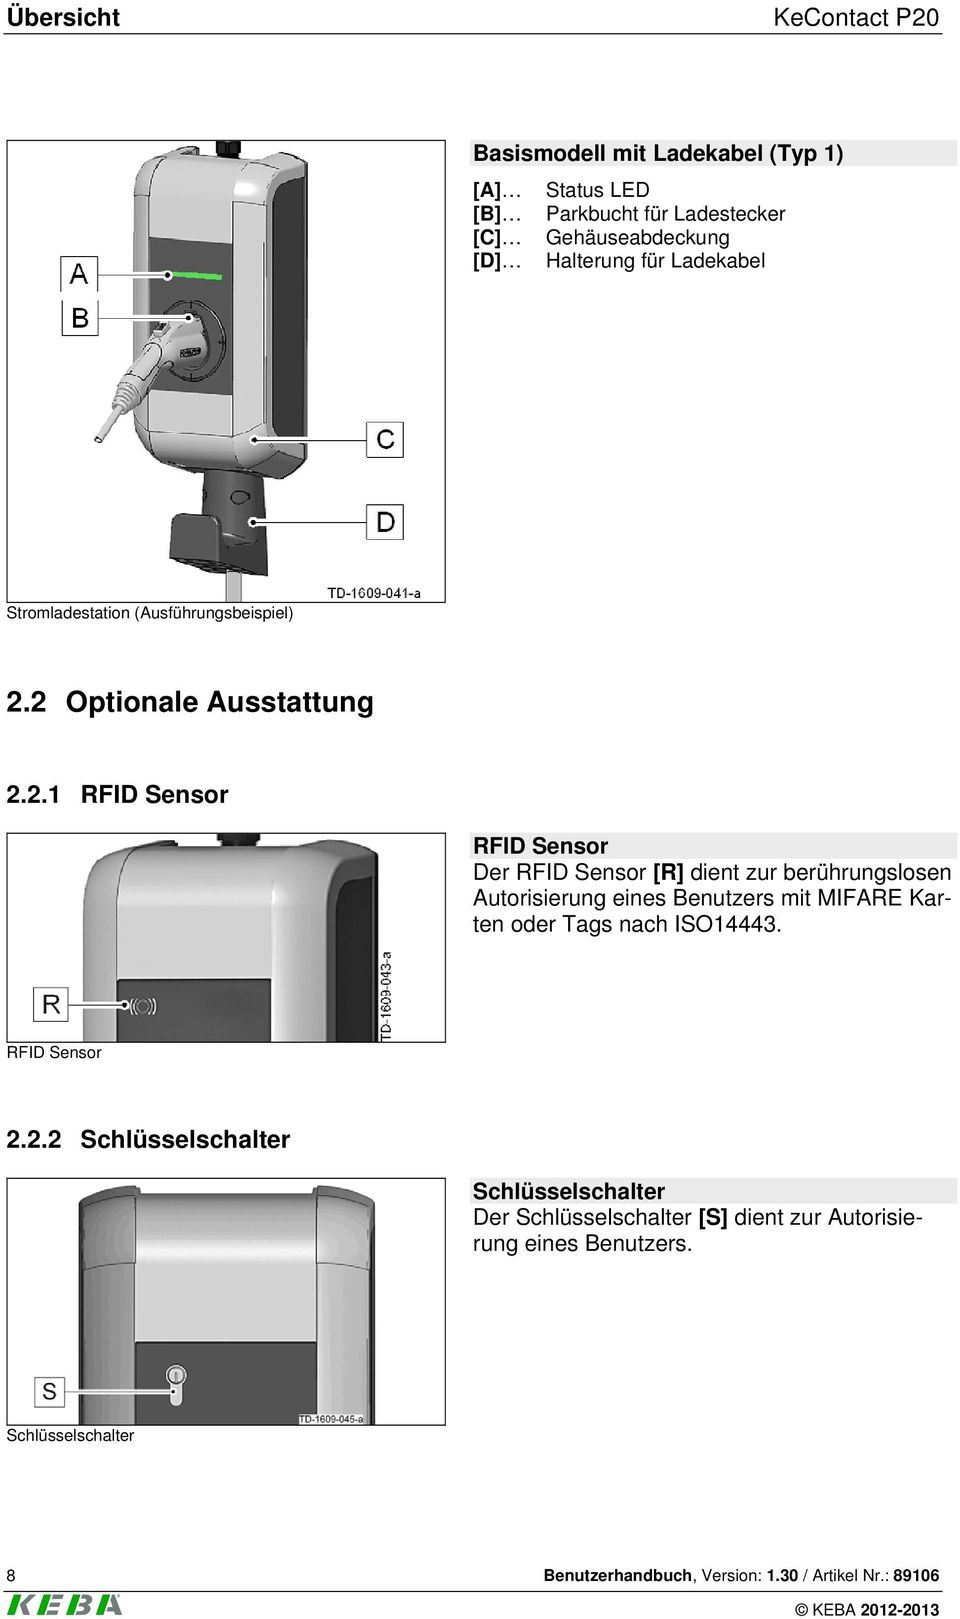 2 Optionale Ausstattung 2.2.1 RFID Sensor RFID Sensor Der RFID Sensor [R] dient zur berührungslosen Autorisierung eines Benutzers mit